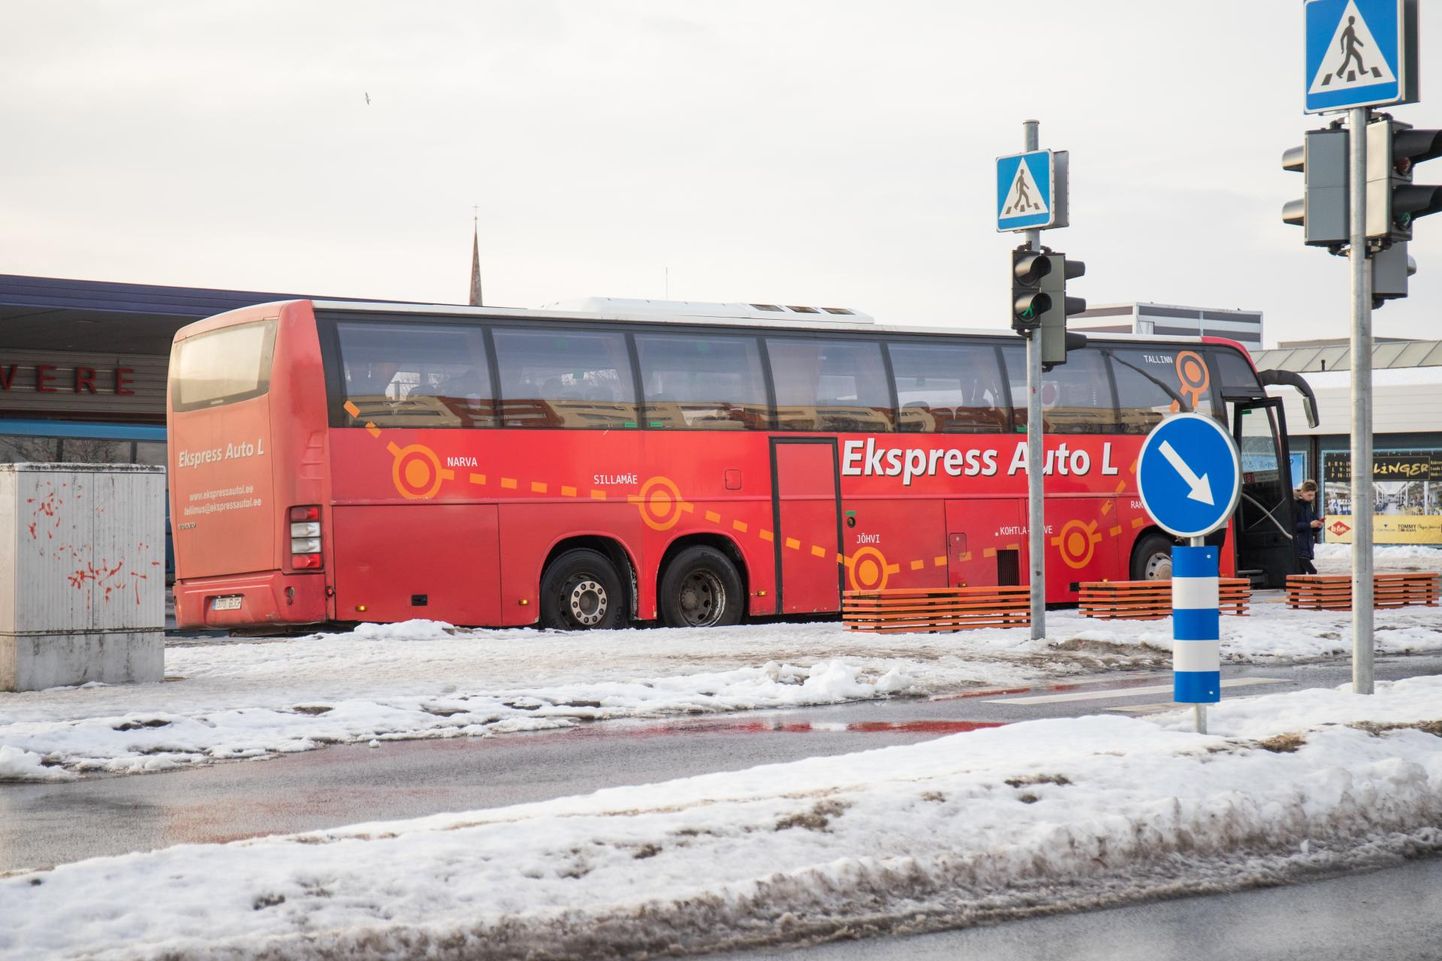 Eelmisel kolmapäeval loobusid vähemalt kaks reisijat Ekspress-Auto L bussiga Rakverre sõitmisest ja väljusid Haljalas.